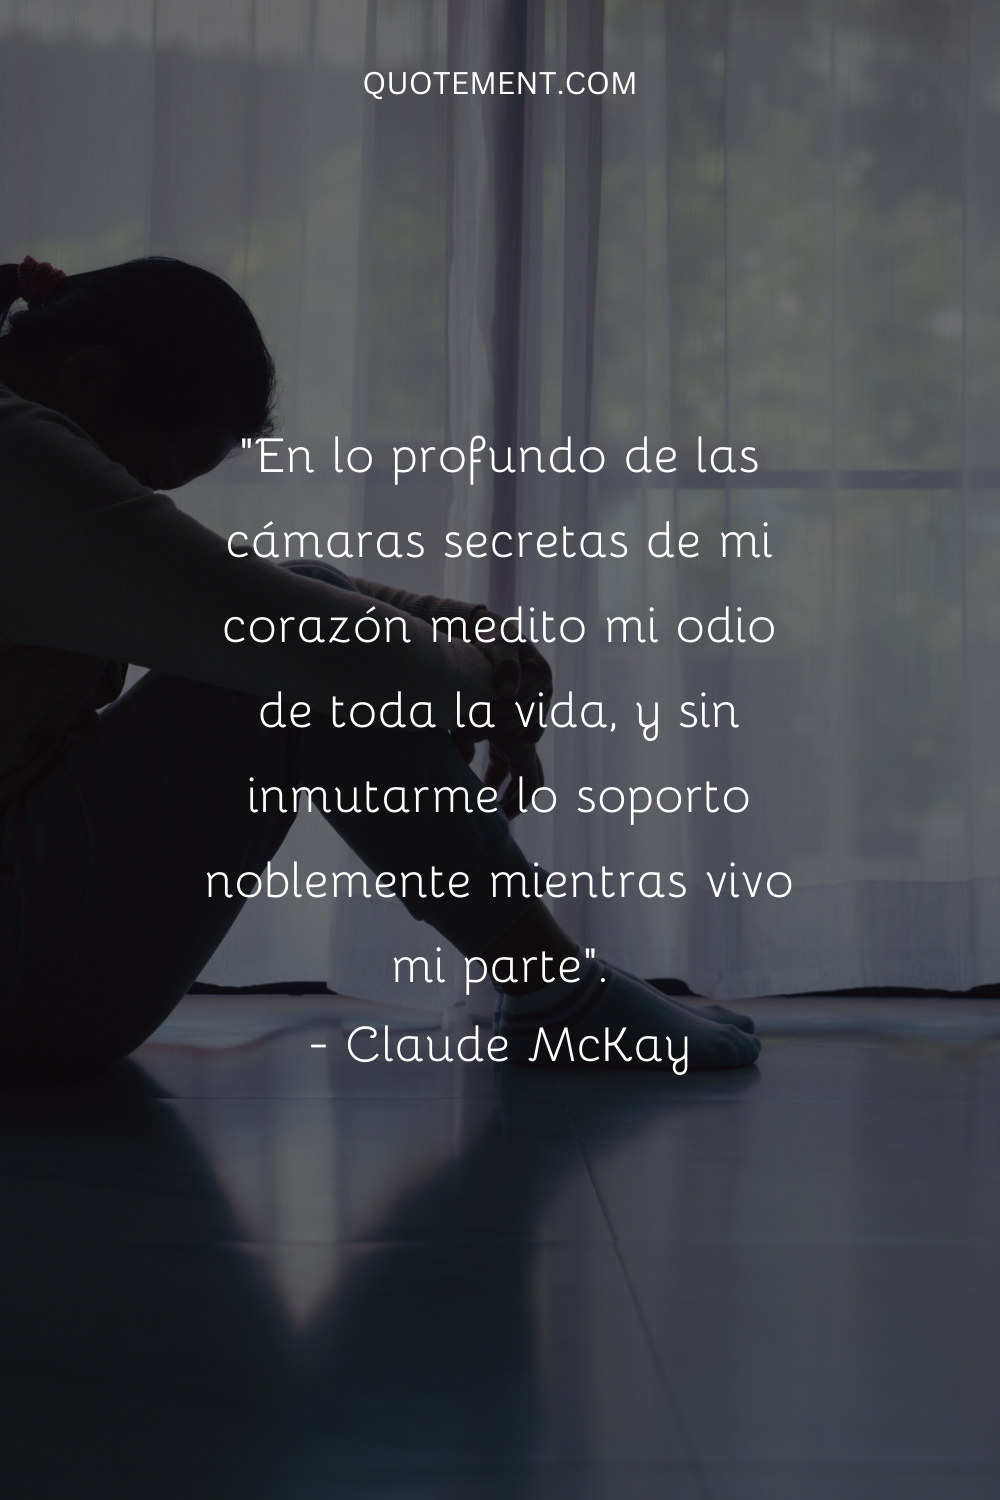 "En lo profundo de las cámaras secretas de mi corazón medito mi odio de toda la vida, y sin inmutarme lo soporto noblemente mientras vivo mi parte". - Claude McKay